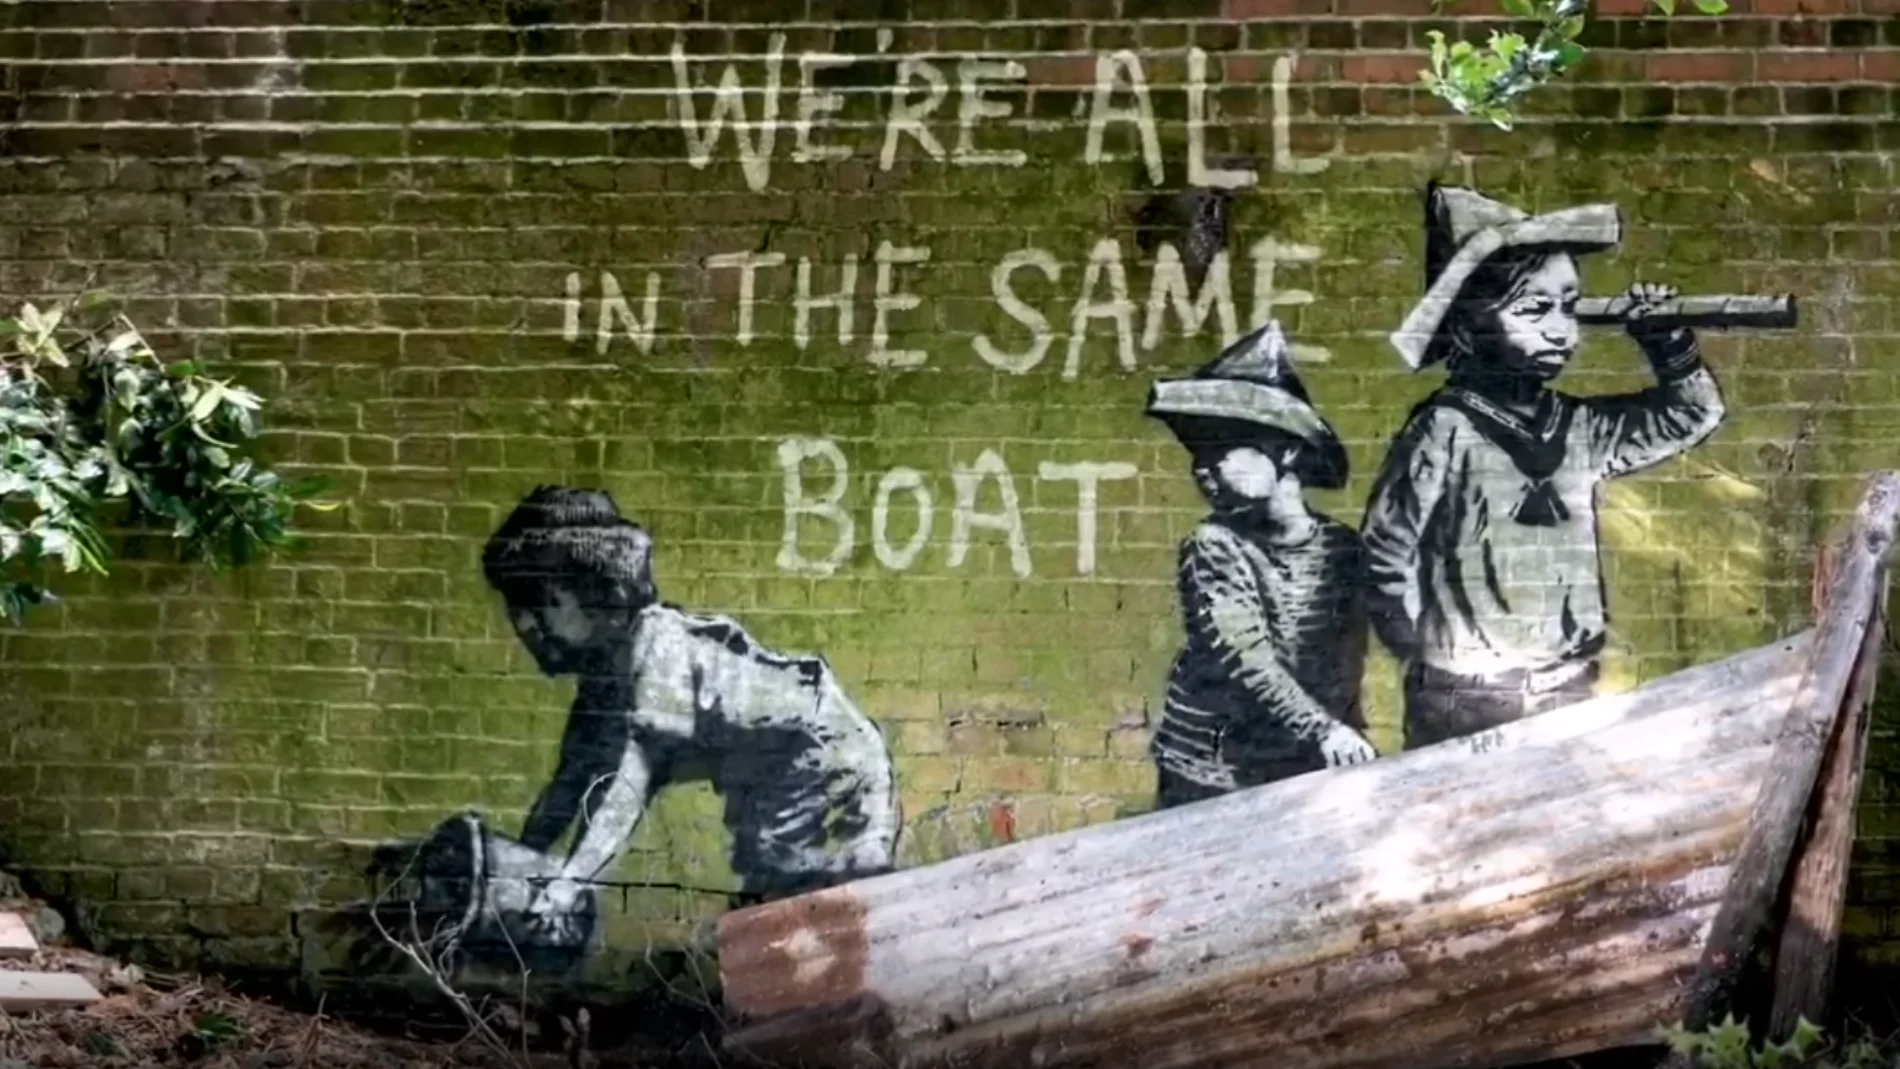 Una de las obras de Banksy aparecidas en Reino Unido